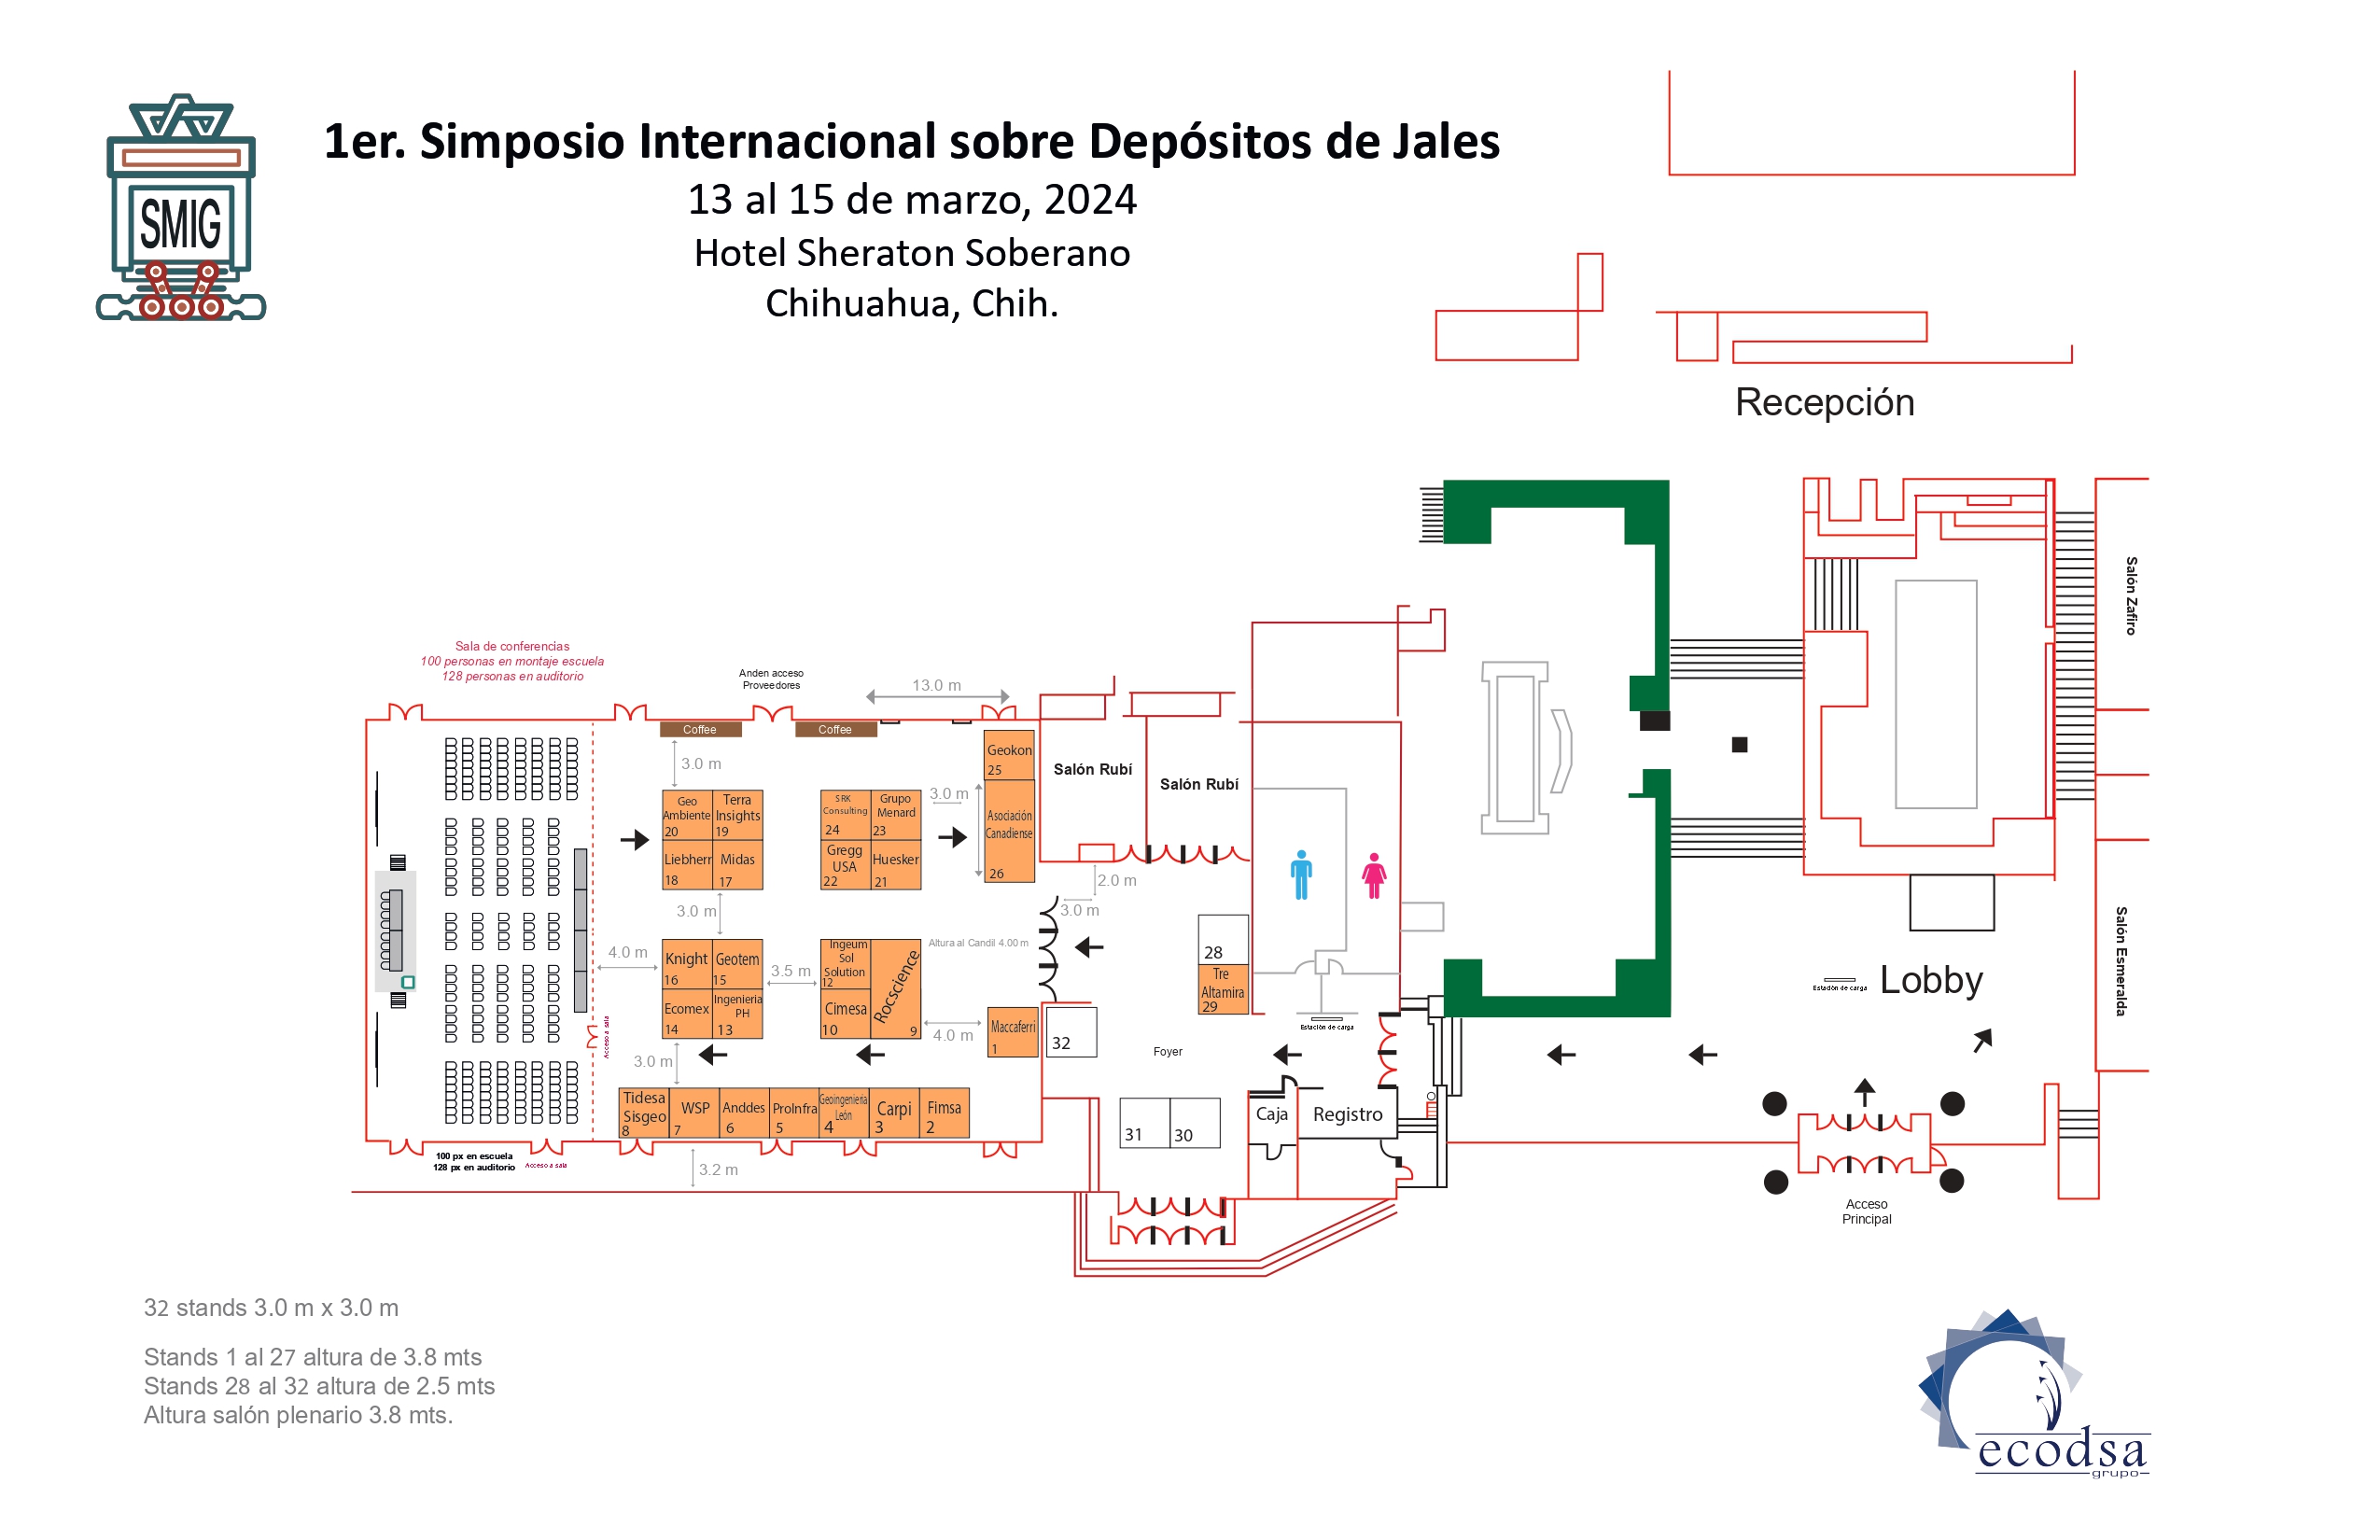 Mapa Expo, Simposio de jales, Smig, 2023